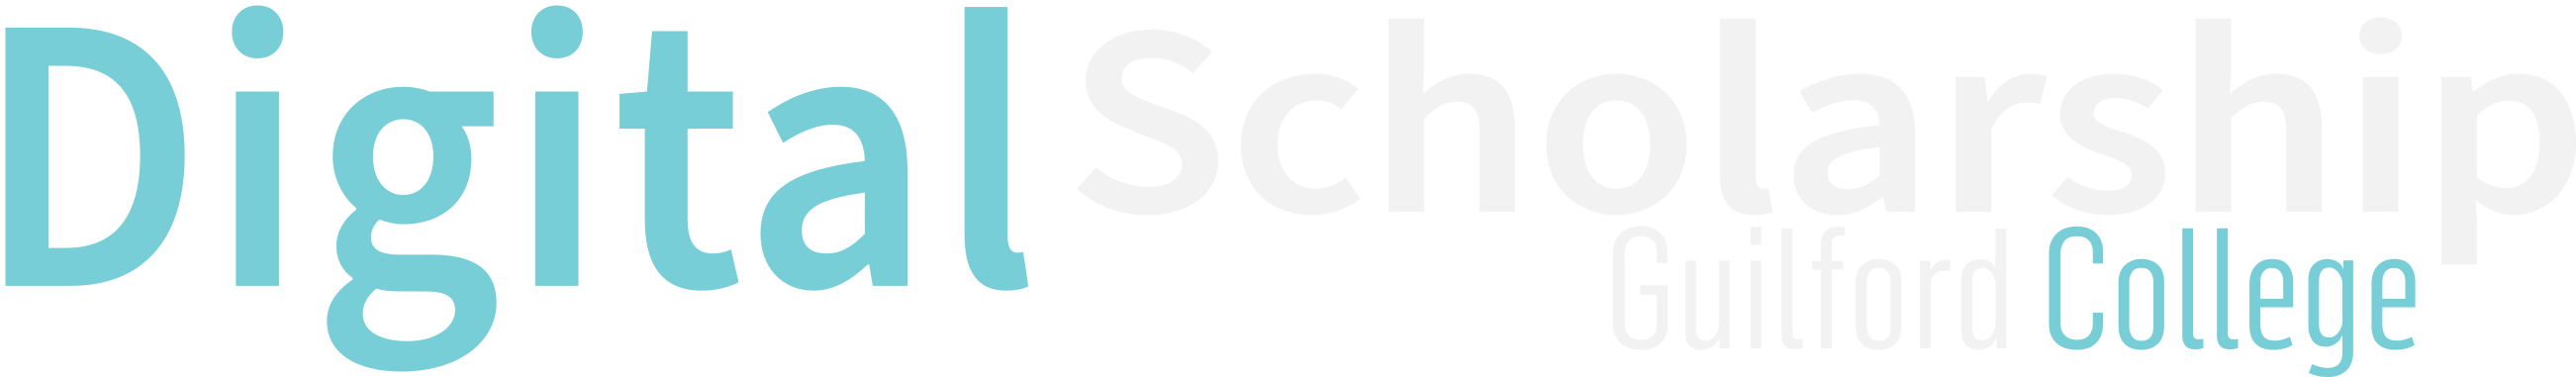 Digital Scholarship logo